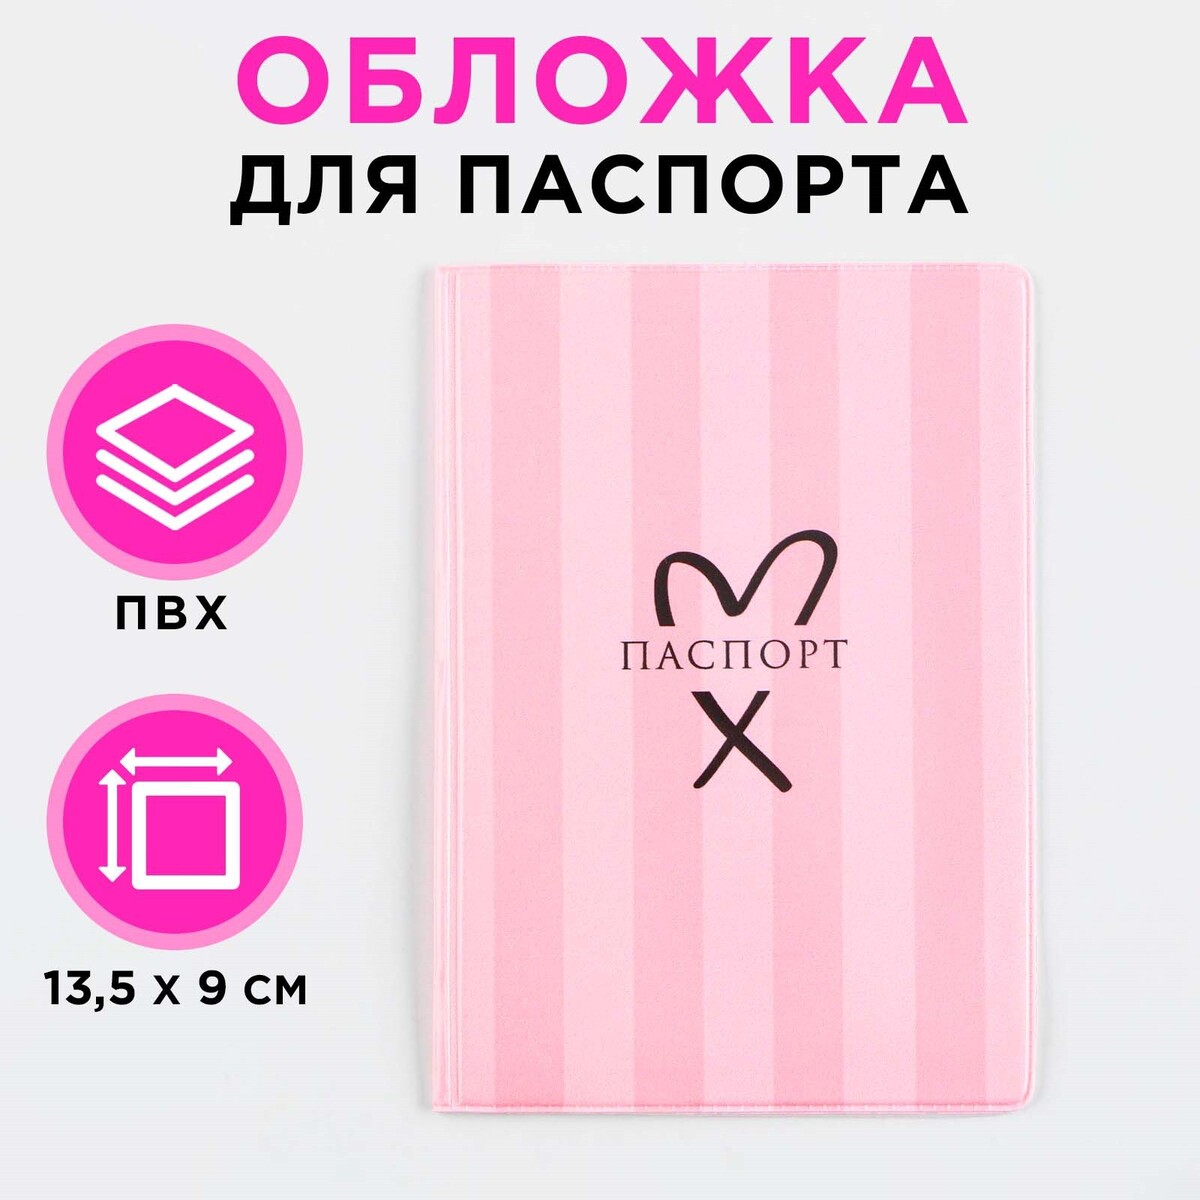 Обложка для паспорта, розовая полоска, пвх, полноцветная печать блокнот полоска к полоске а5